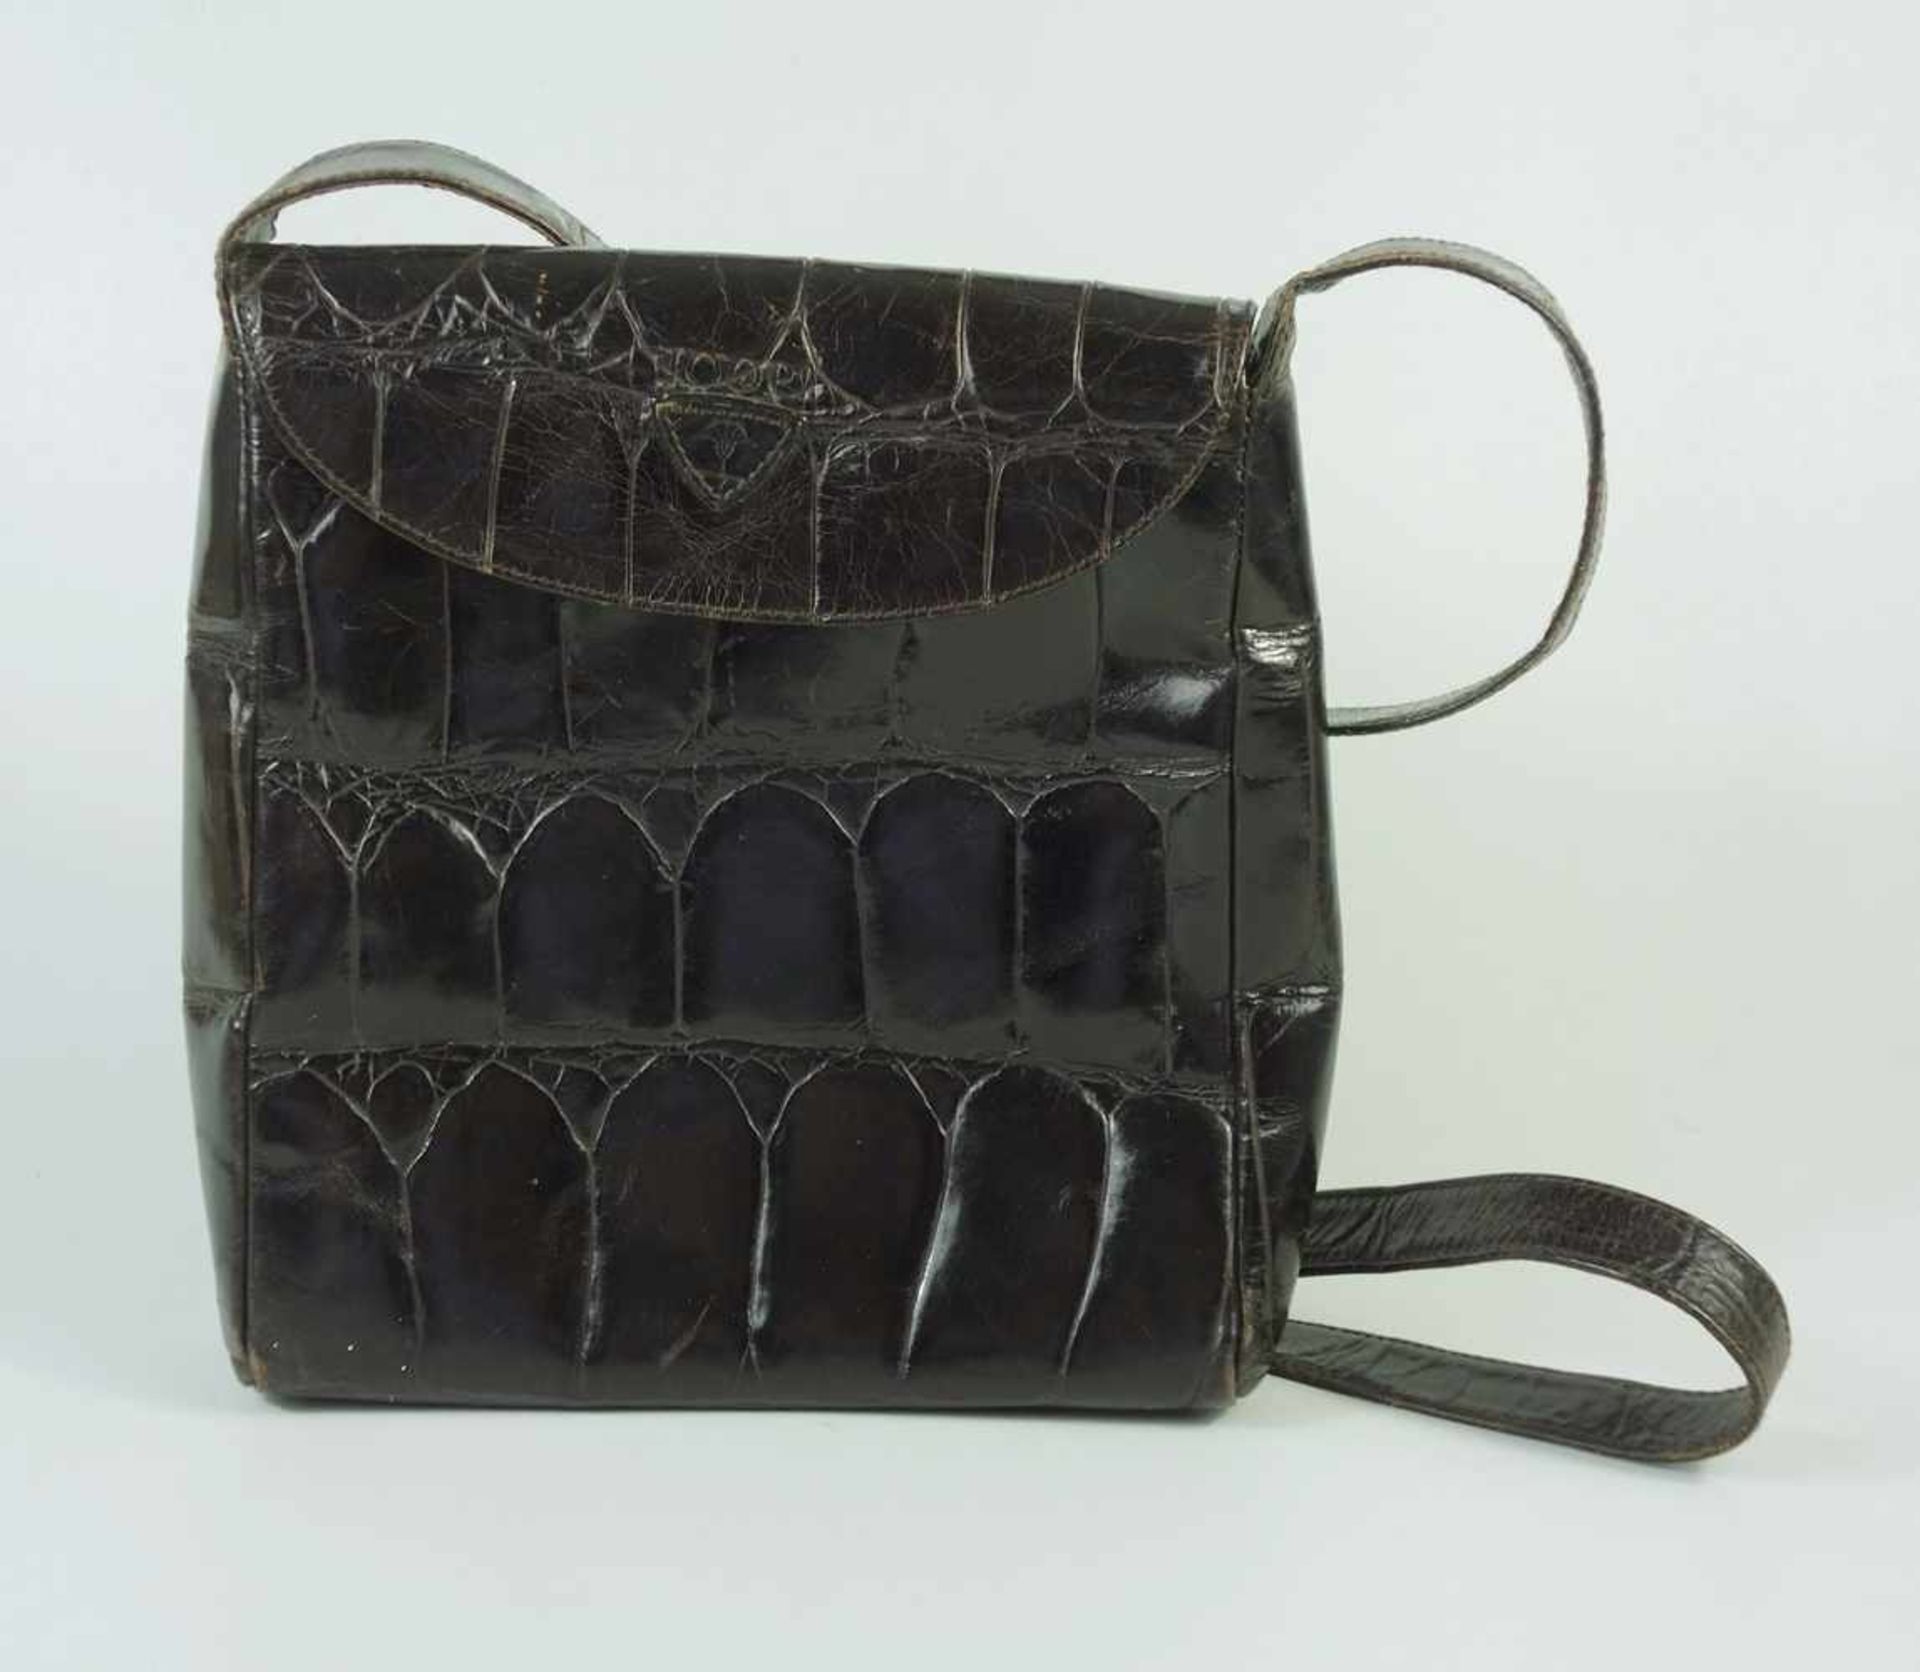 Handtasche in Krokodilsleder-Optik, JOOP!, dunkelbraun, mit Logo auf der Lasche, innen